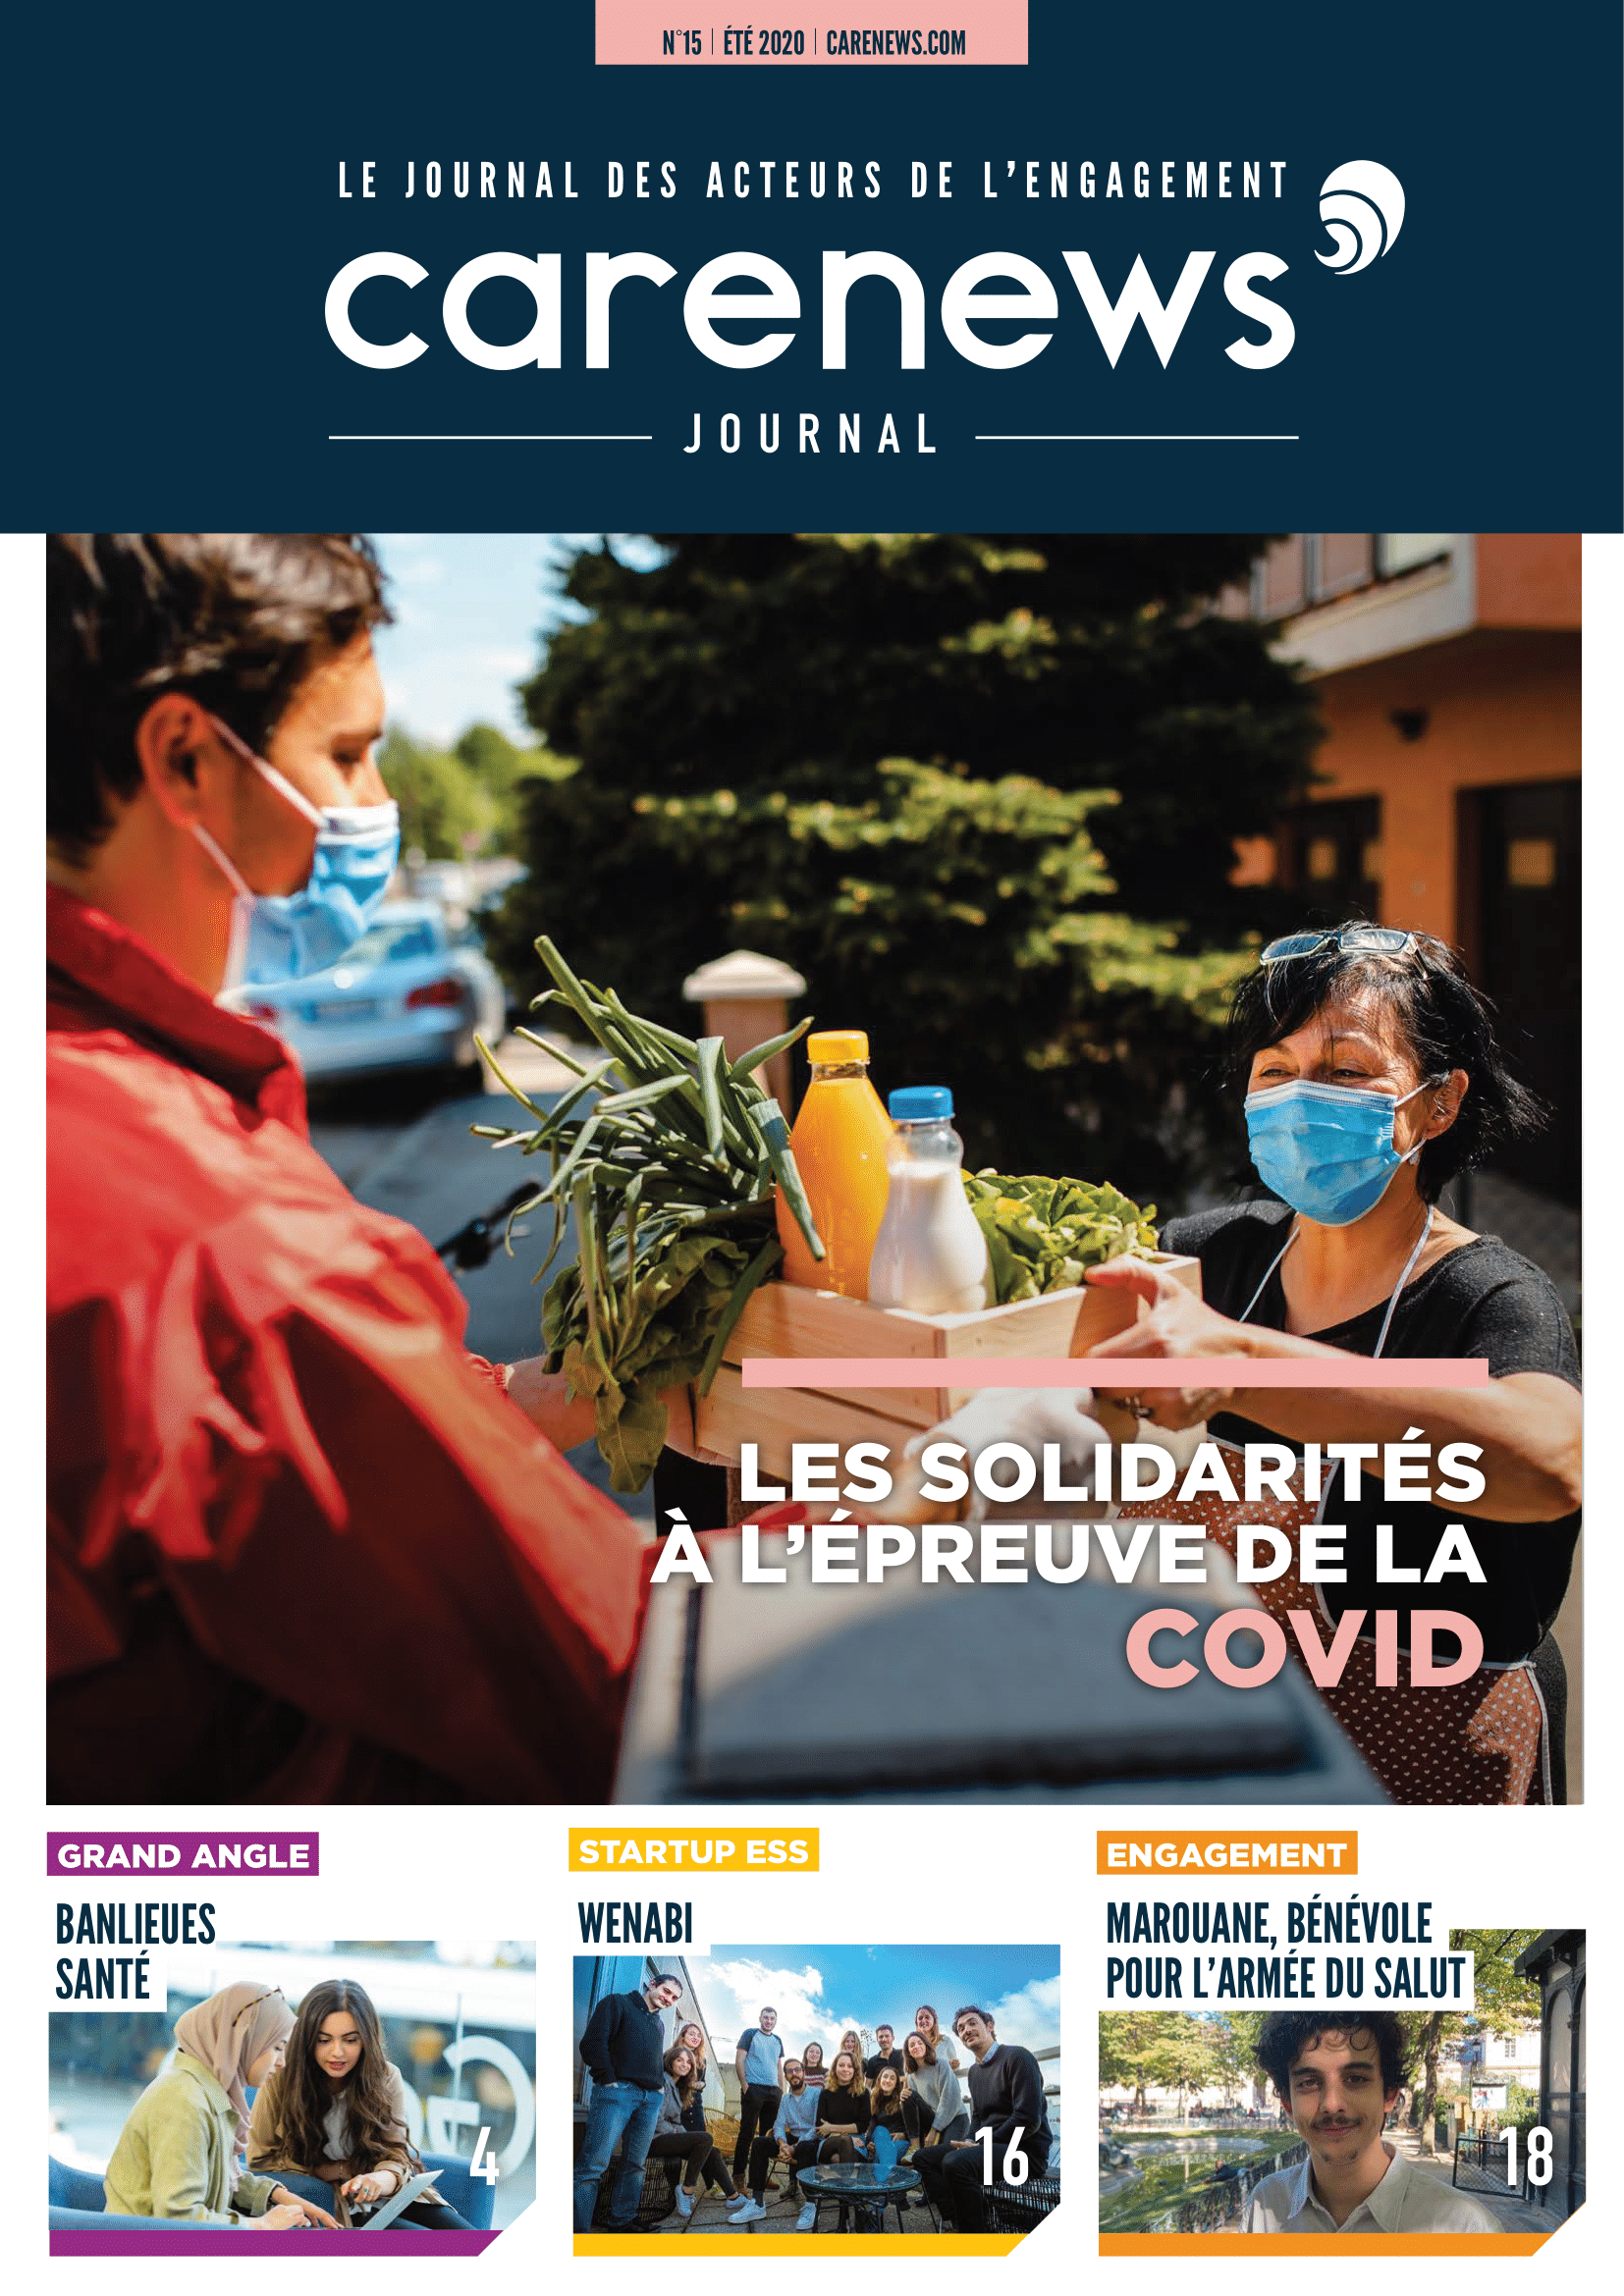 Couverture du n°15 du Carenews Journal consacré aux solidarités à l'épreuve de la Covid-19